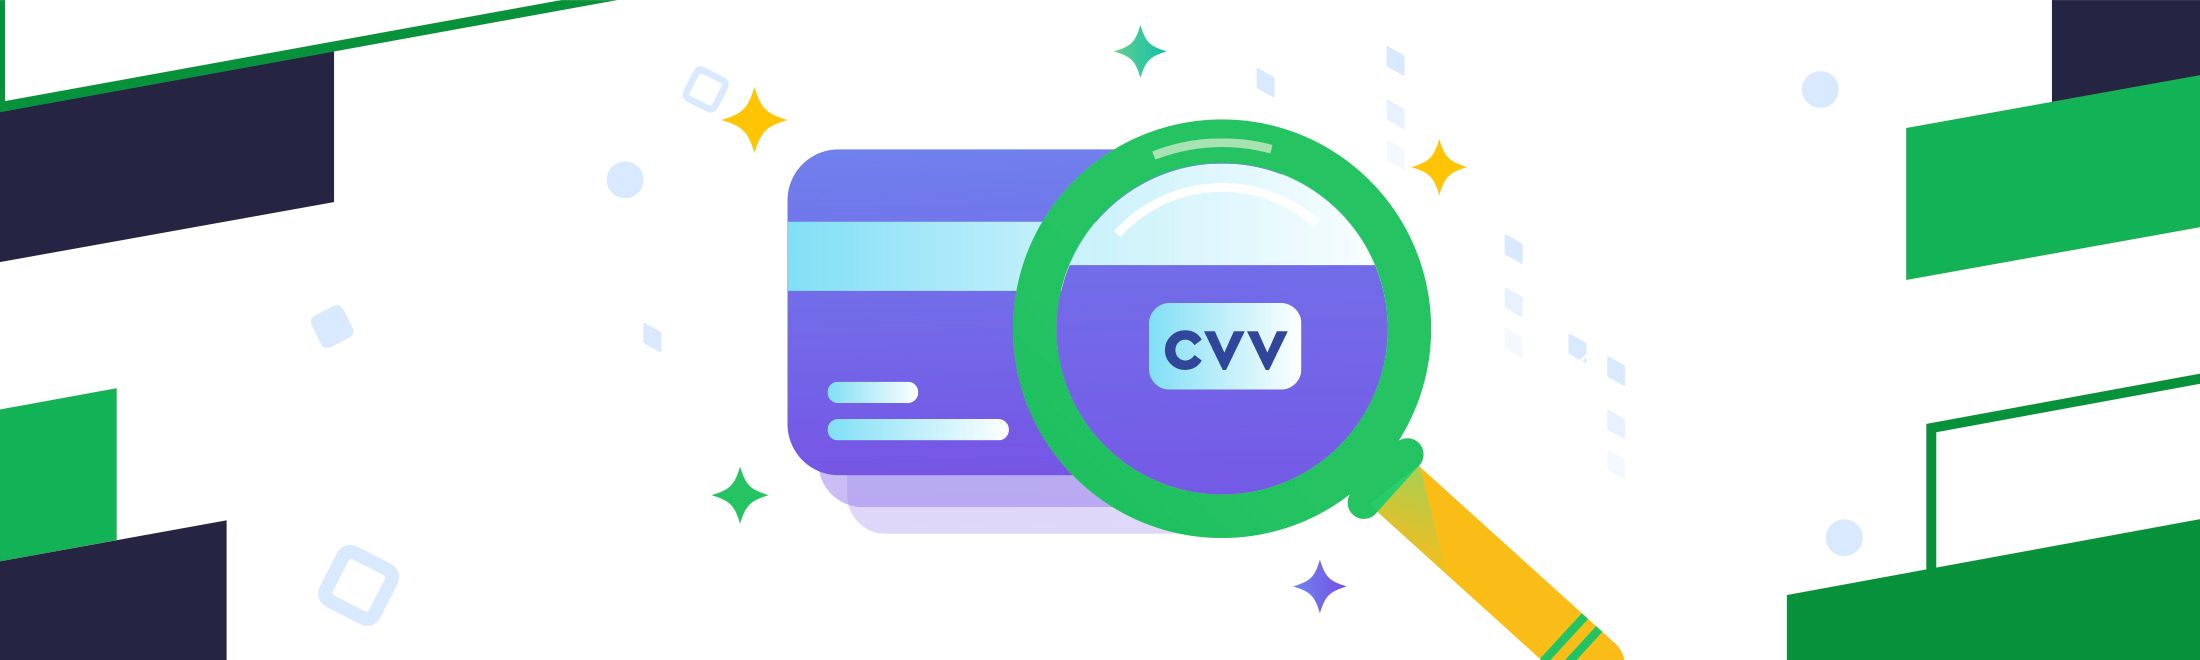 Что такое CVV / CVC код на банковской карте и где он находится? #1